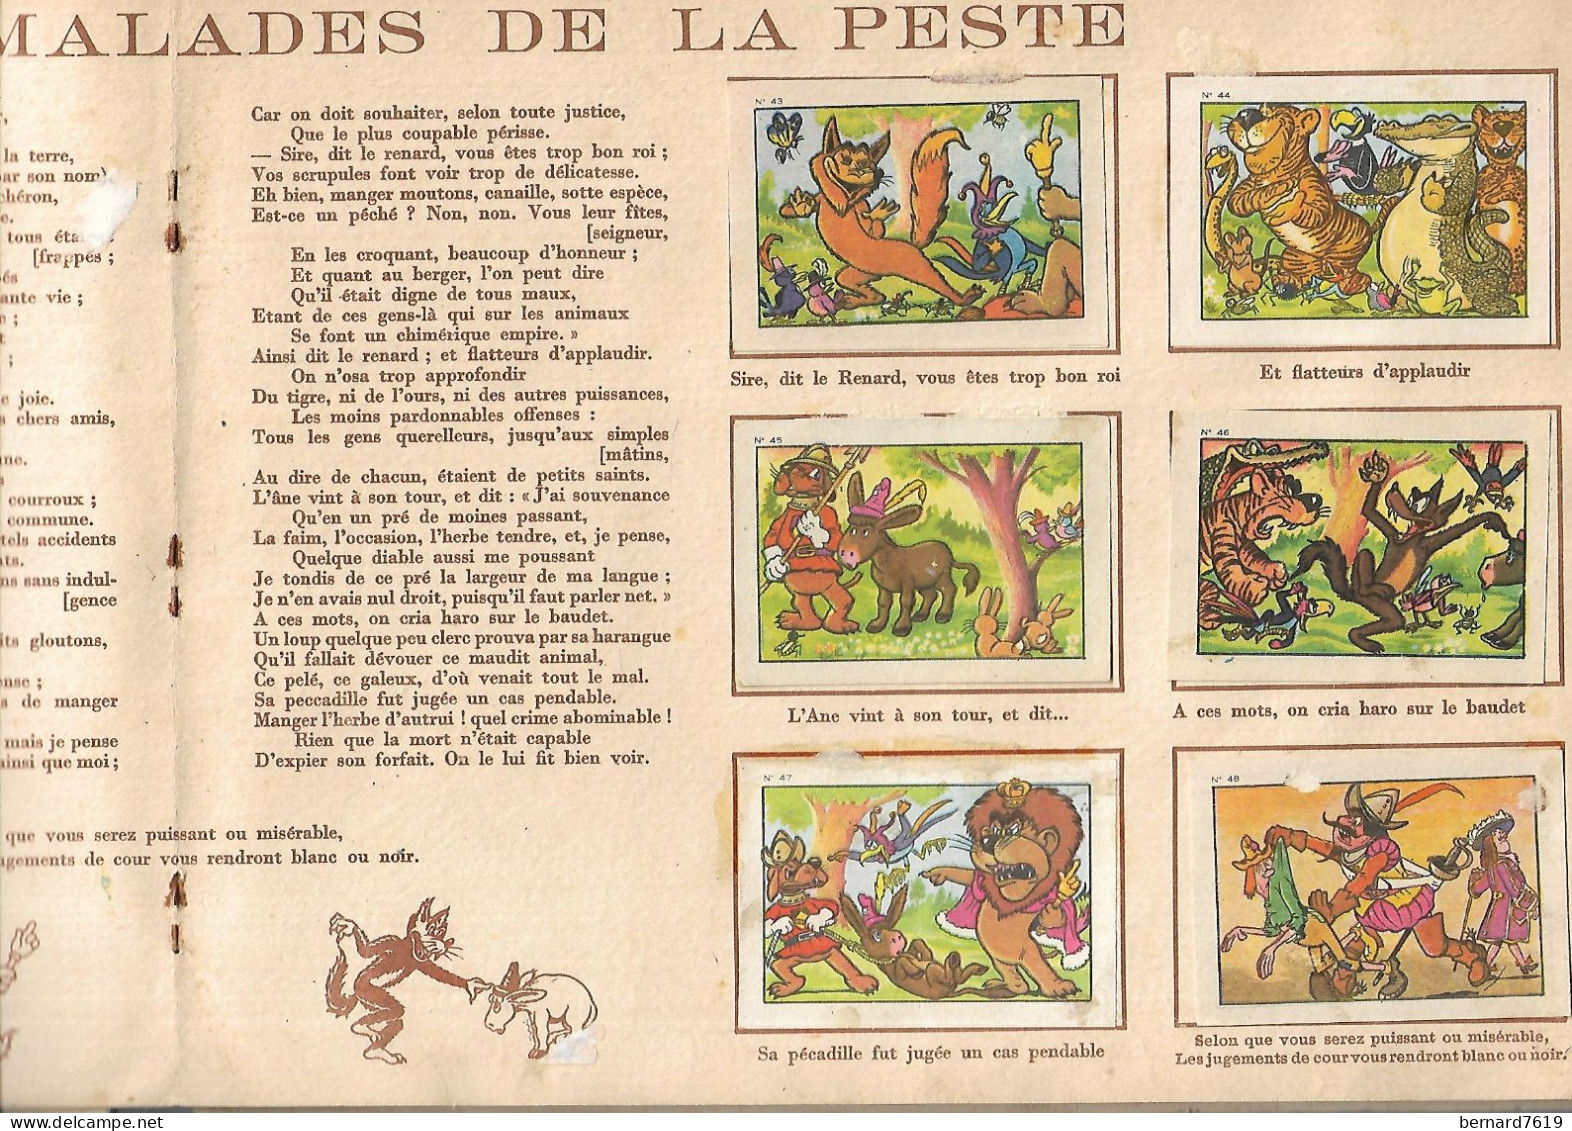 Livre  Les Fables  De La Fontaine Collection  Des Vignettes Du Chocolat Menier - Cuentos